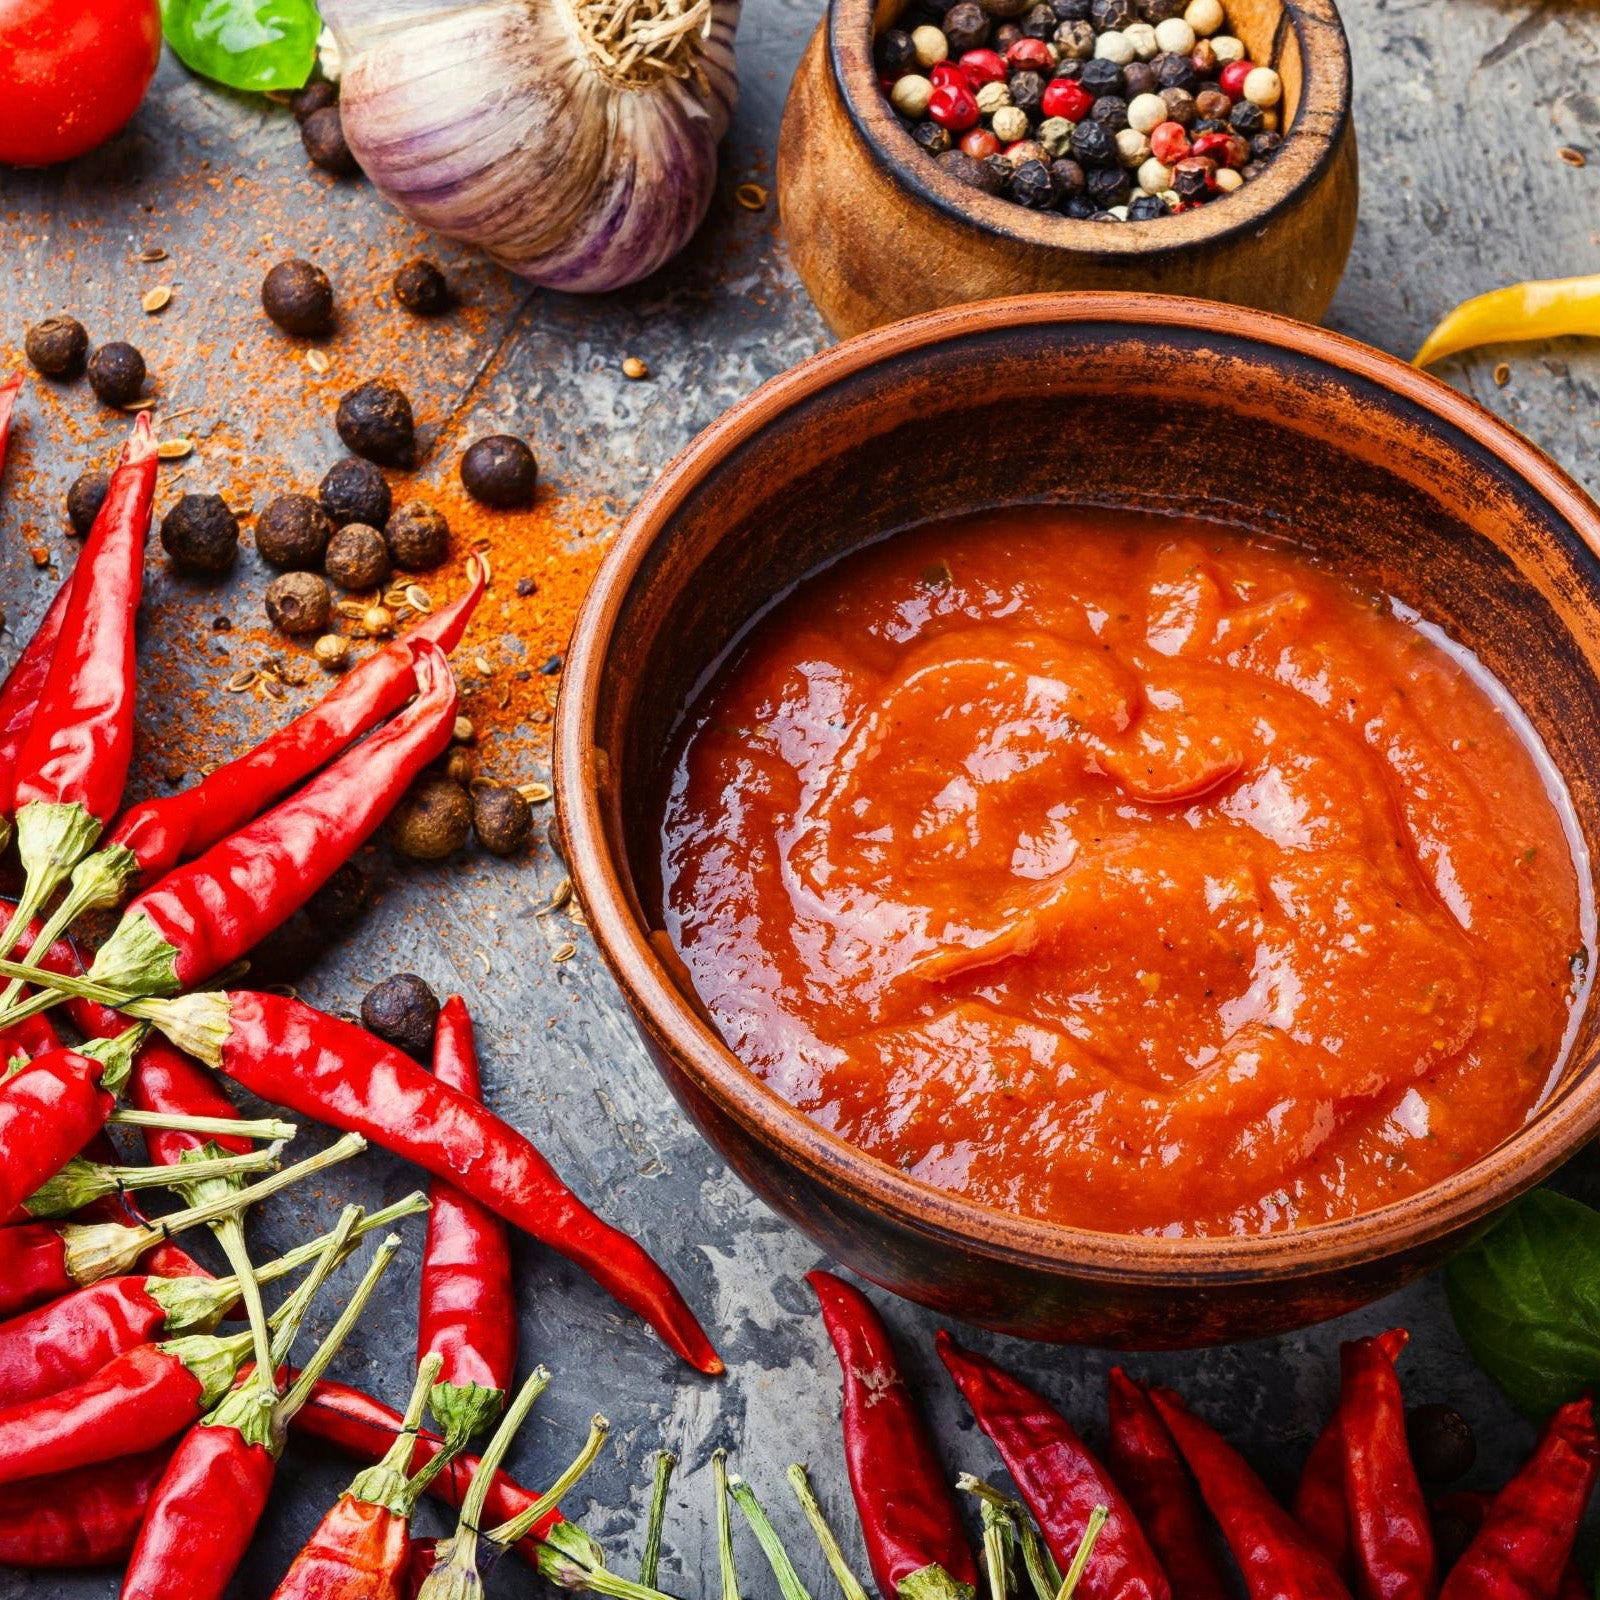 health benefits of hot sauce